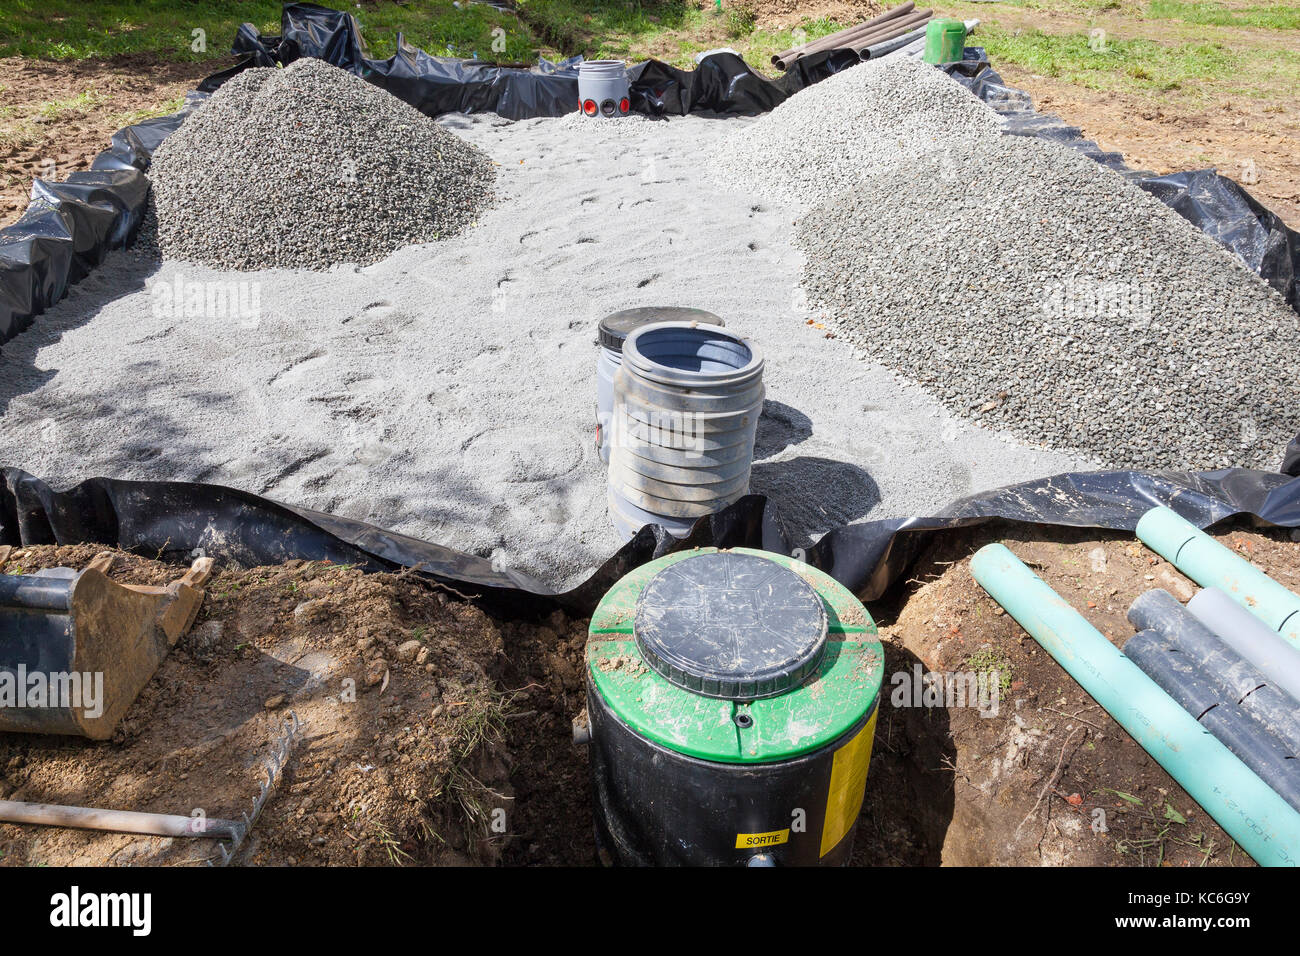 Einbau eines Sand- und grevel filter Bett für einen Haushalt septischen Tank für die Entsorgung und Reinigung von Abwasser, Abwasser und wasterwater. Niedrigen Winkel v Stockfoto